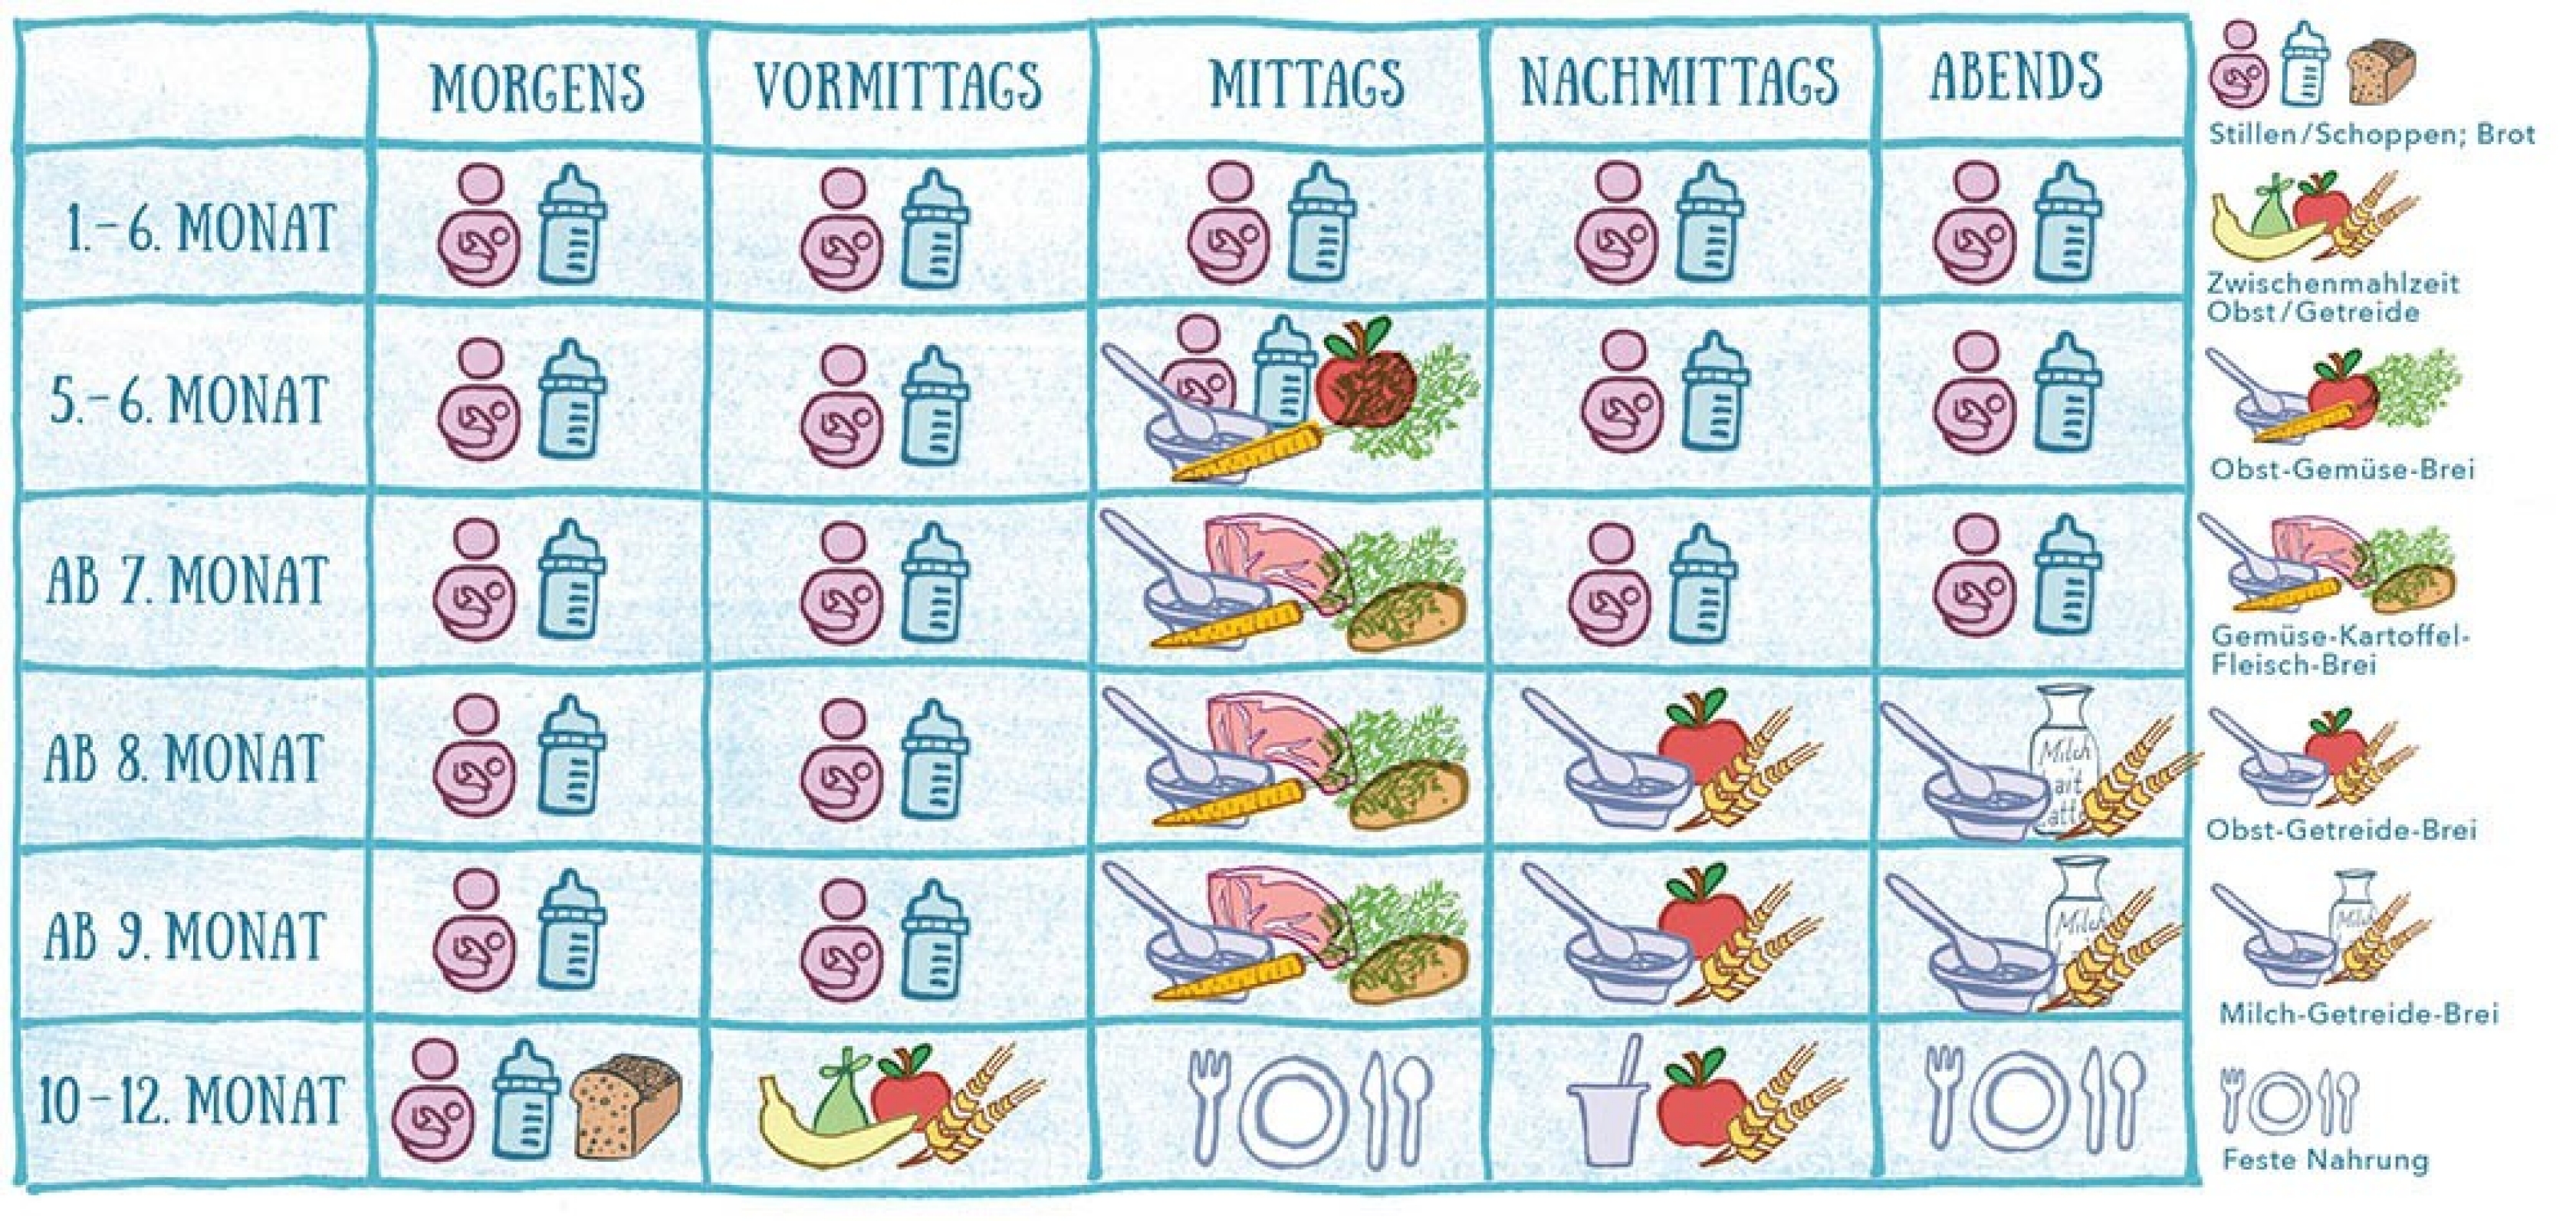 Die Tabelle zeigt einen Speiseplan für Babys im ersten Lebensjahr, vom Schoppen bis zum ersten Brei.